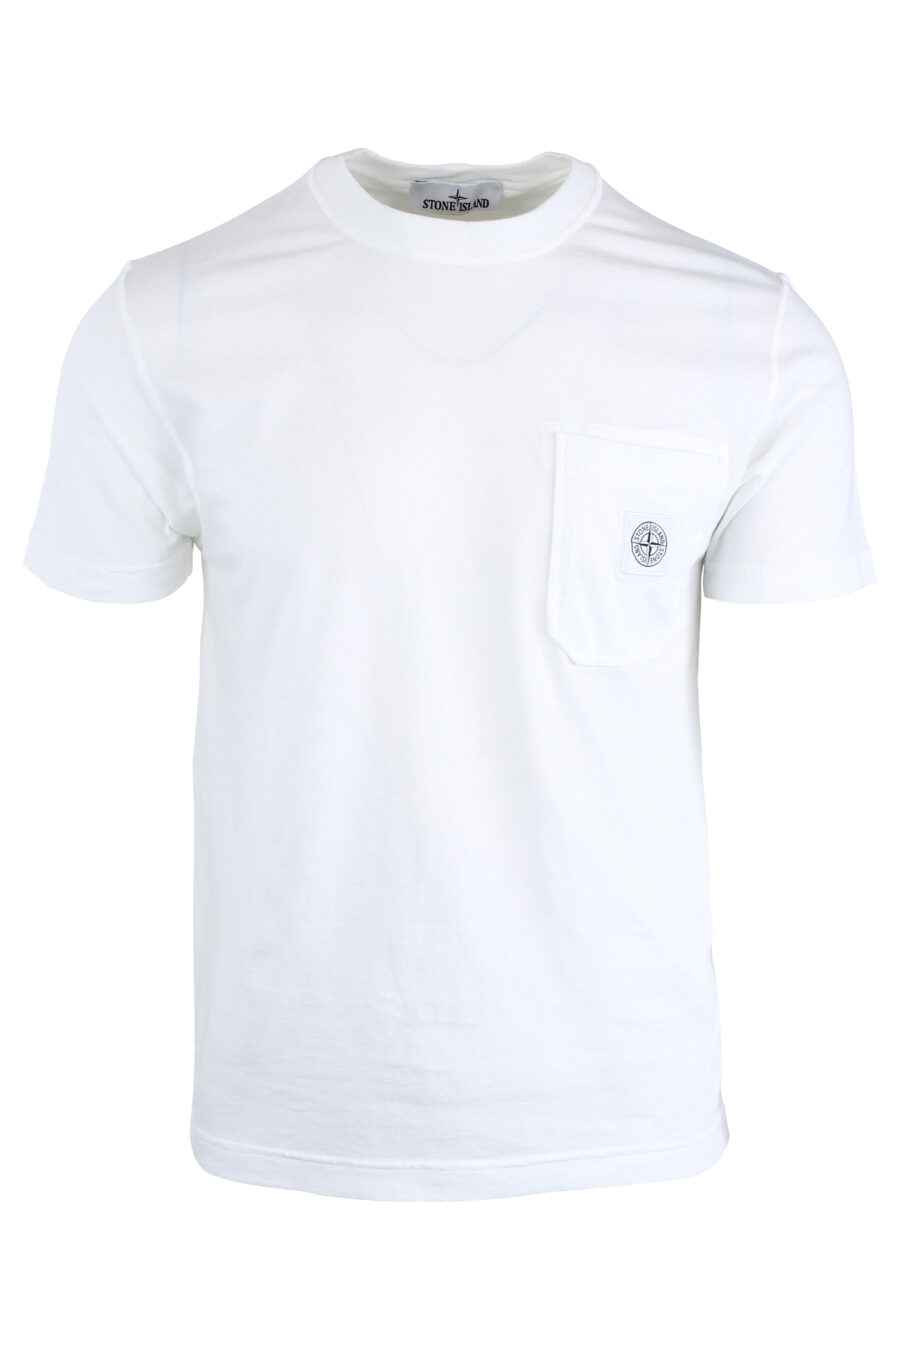 T-shirt branca com bolso - IMG 1685